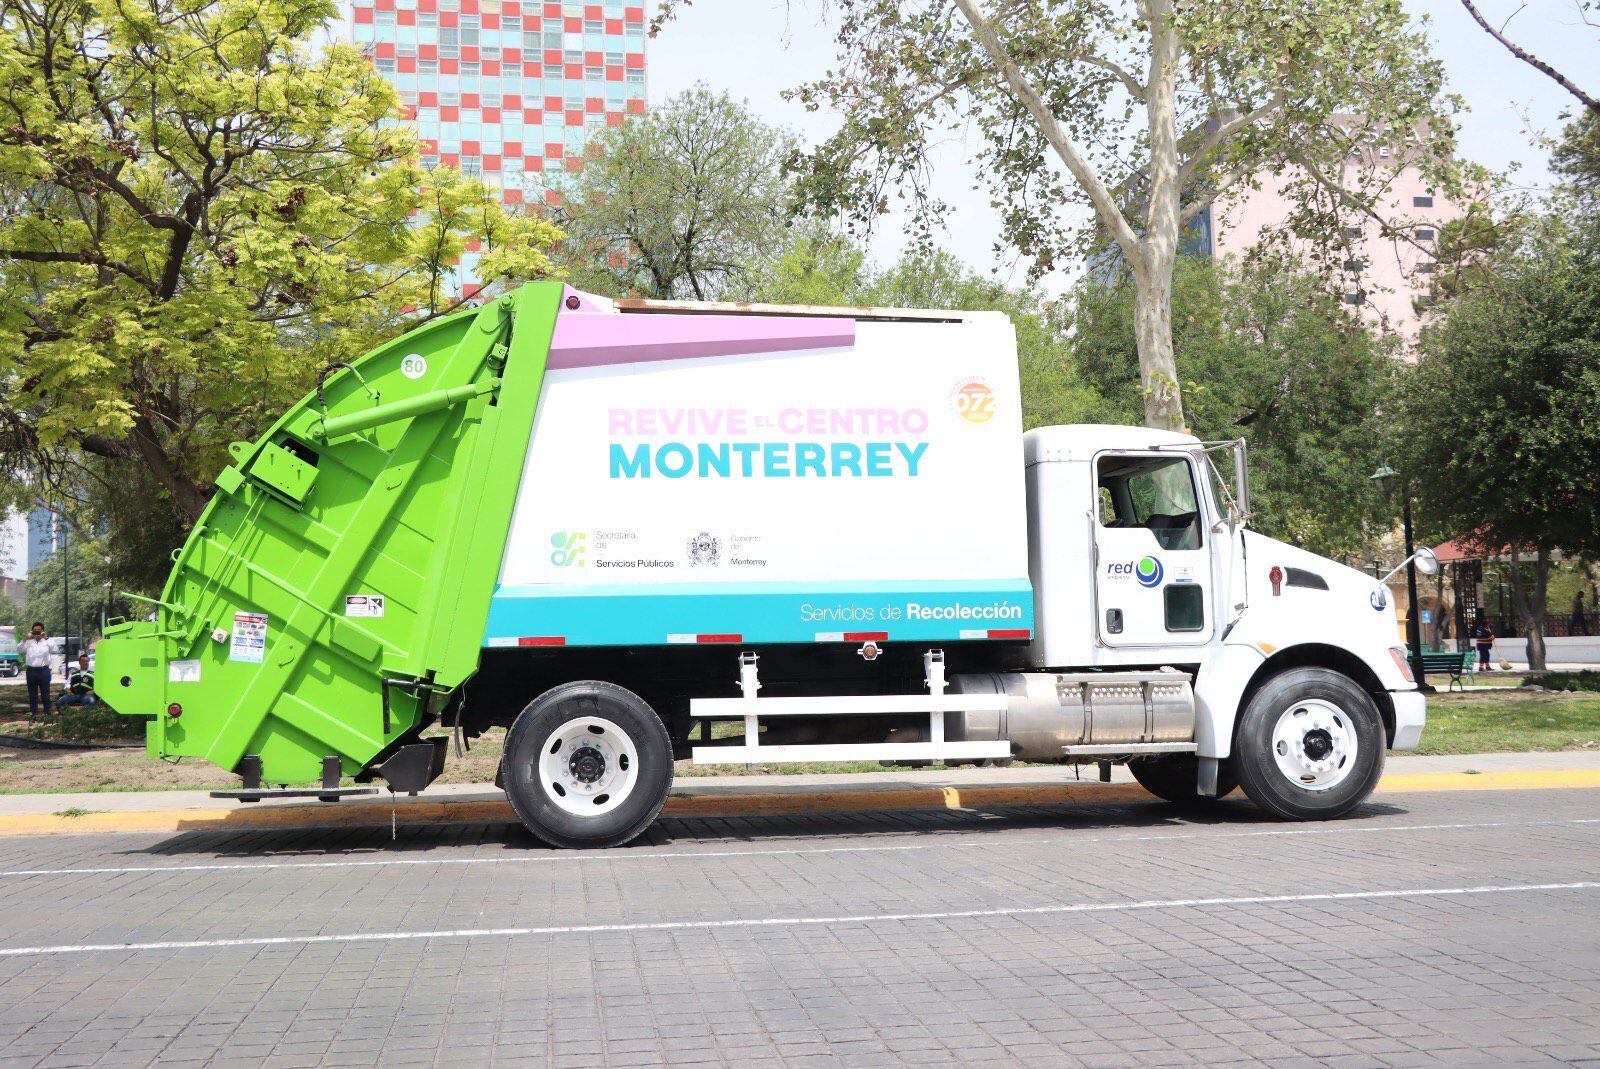 Arranca programa “Revive el Centro” en Monterrey